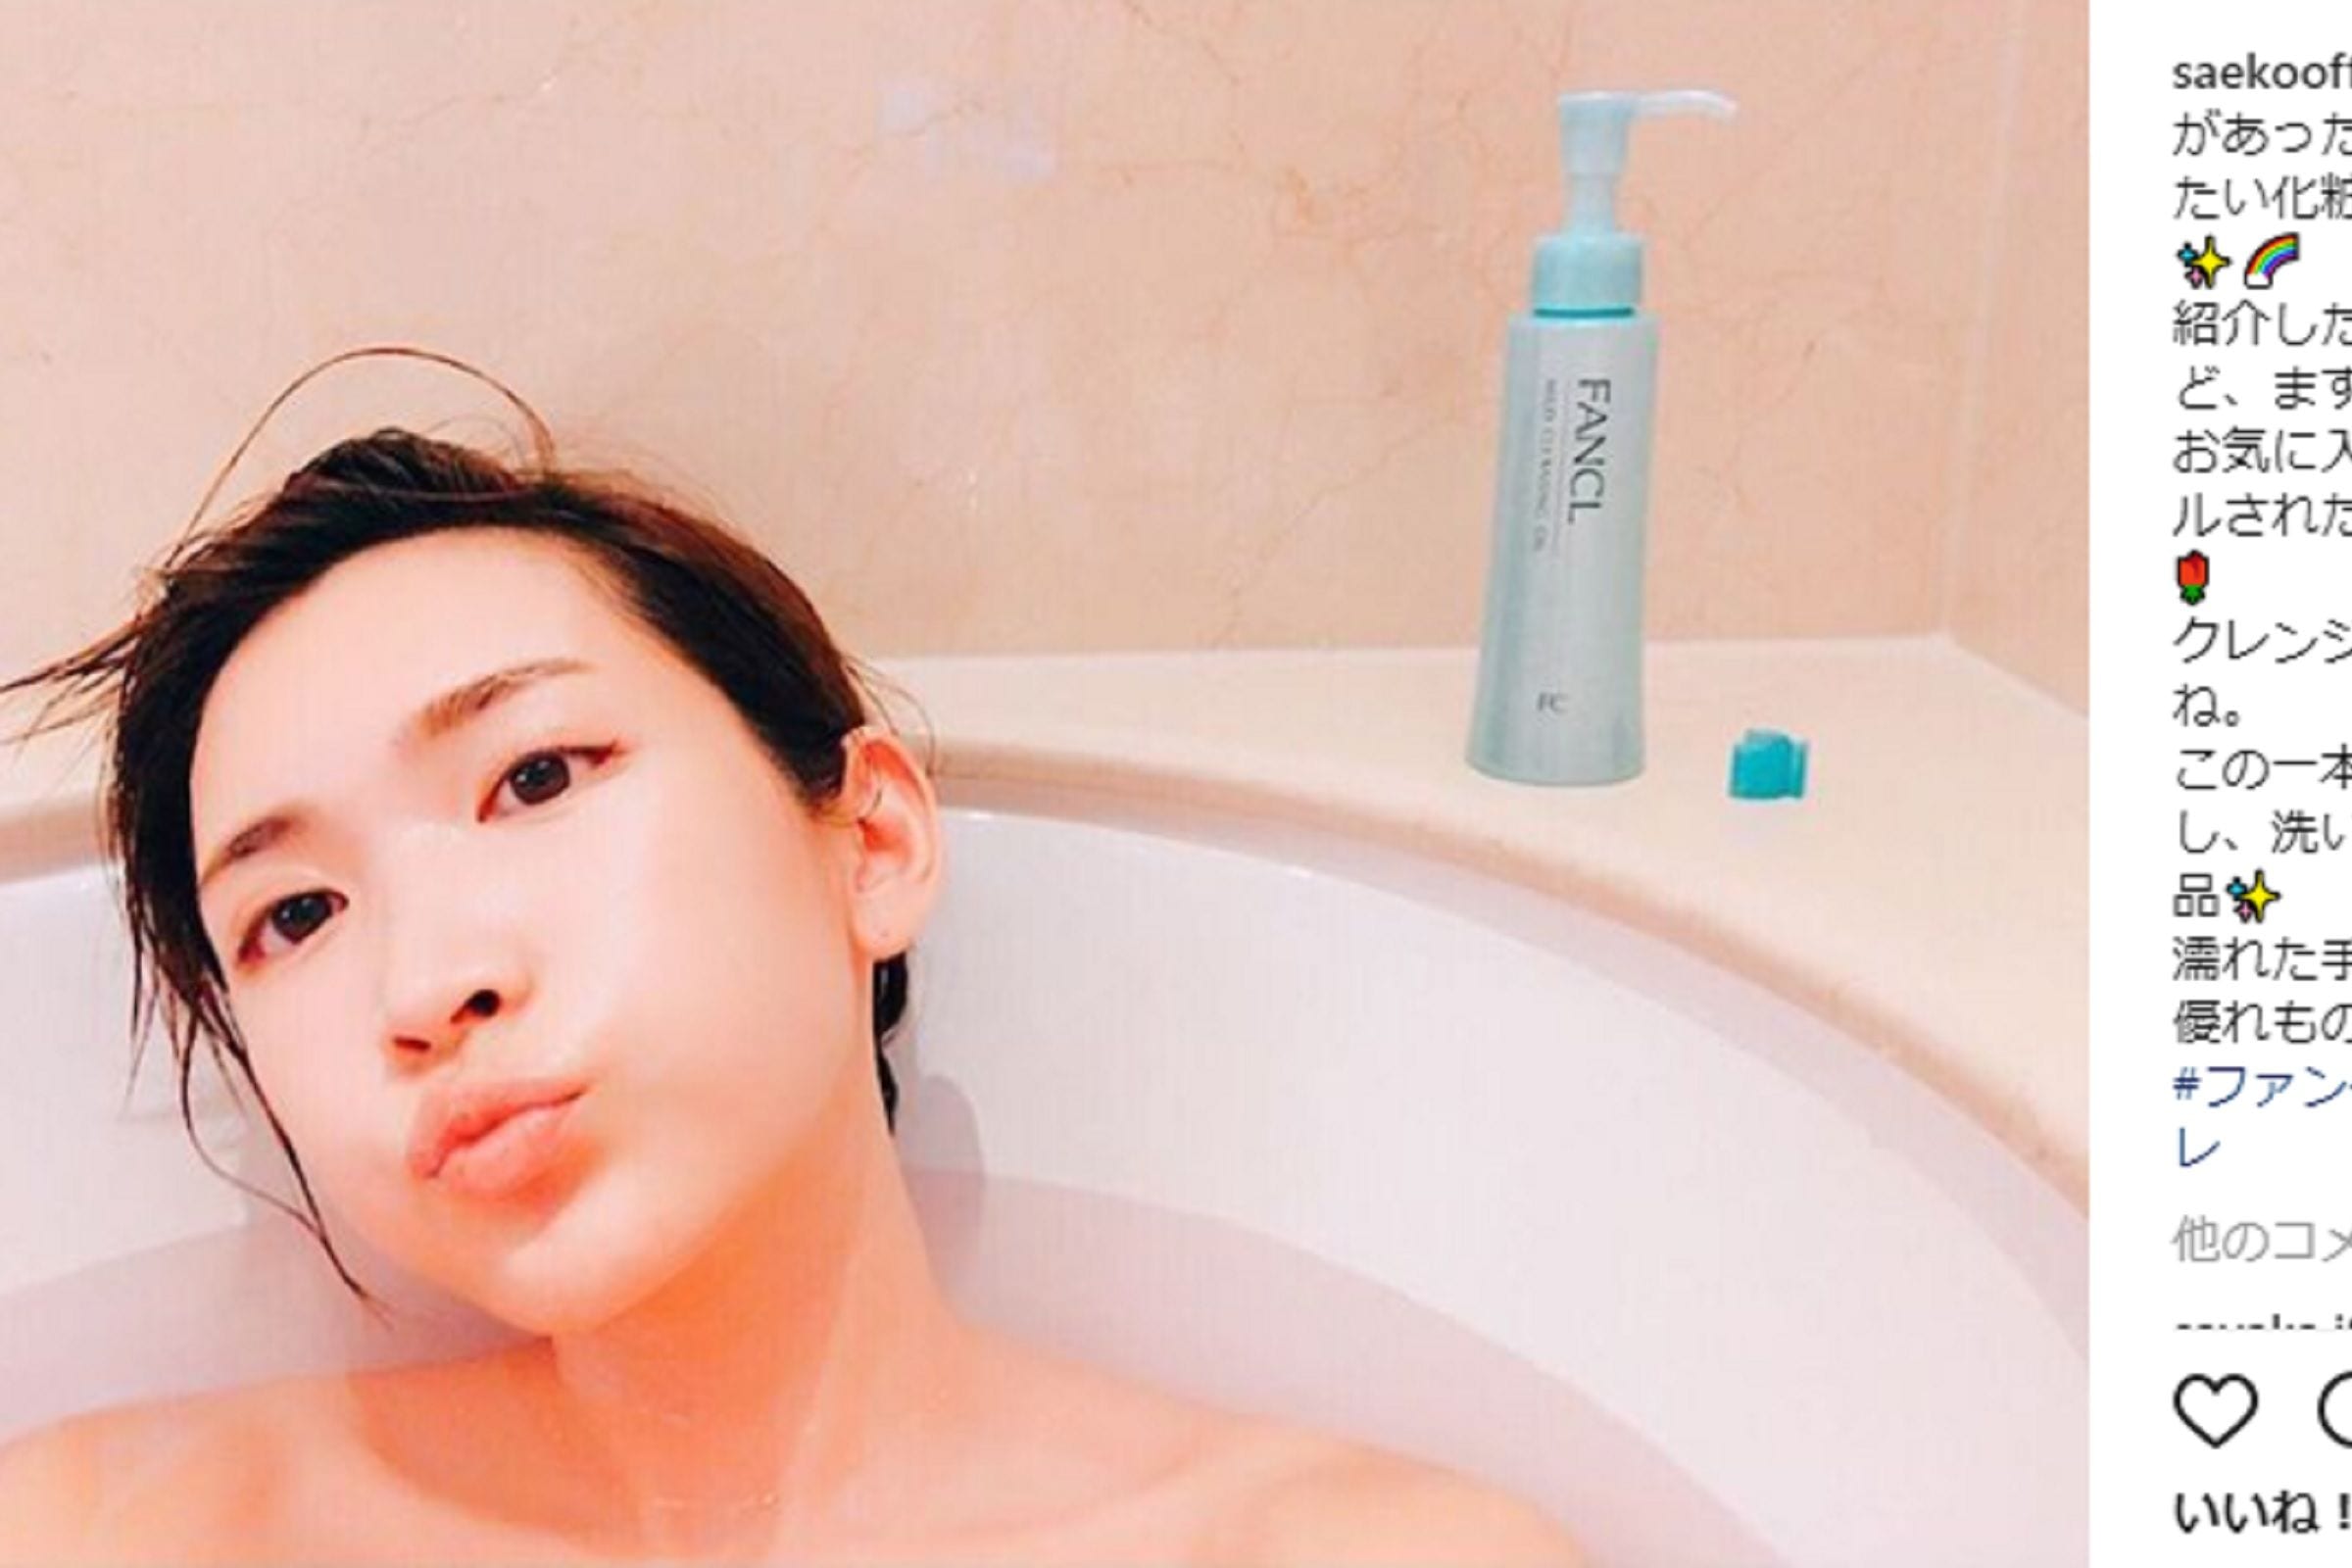 紗栄子が 入浴中の写真 を公開 セクシーなすっぴん卵肌に萌える ニュースサイトしらべぇ